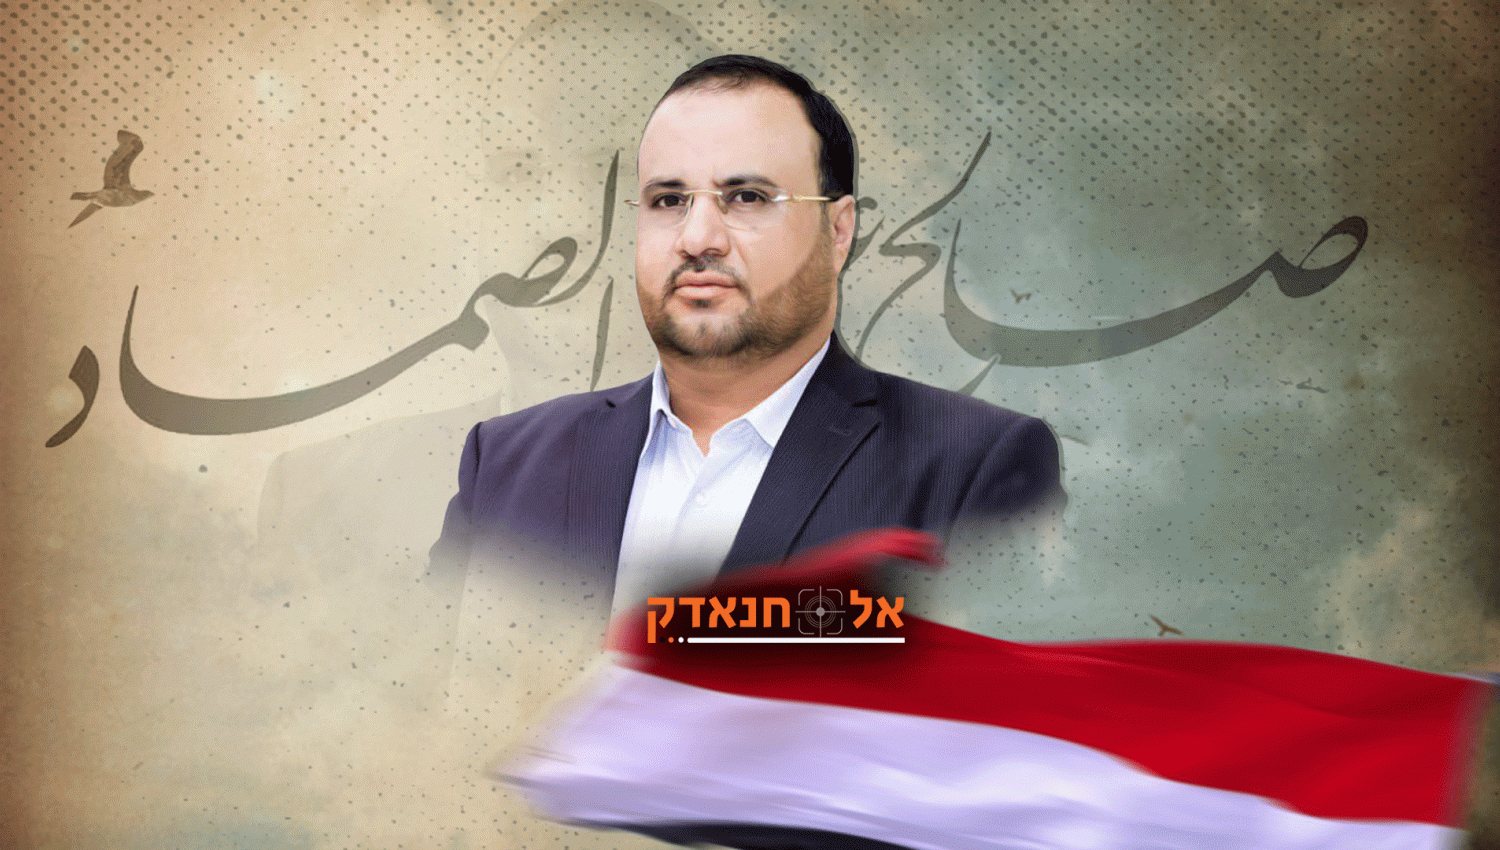 השהיד אל-סמאד: המנהיג שהשיג הניצחון